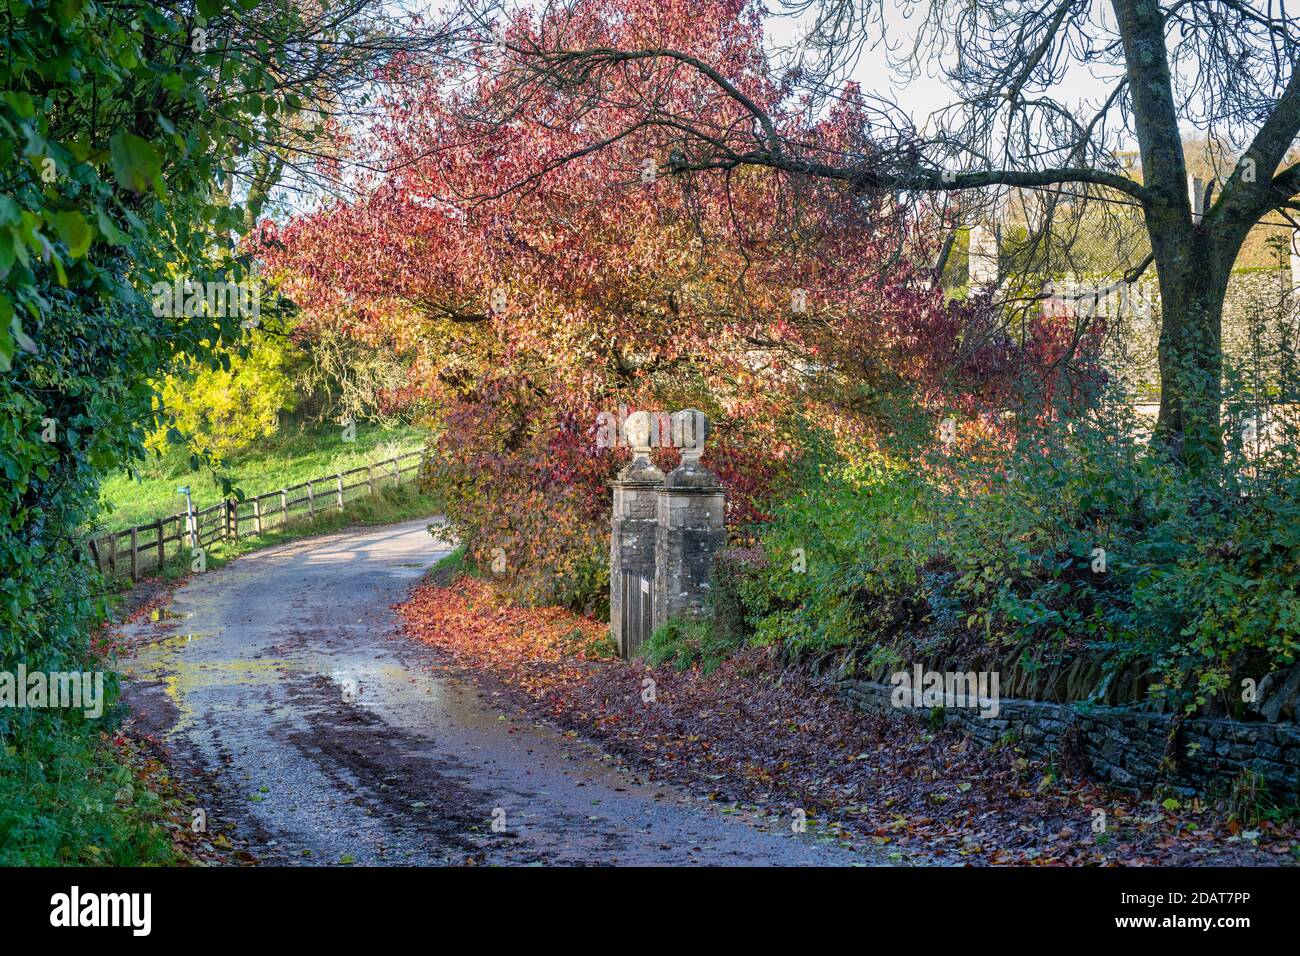 Route de campagne d'automne dans le village de Cornwell, dans les cotswolds. Cornwell, Oxfordshire, Cotswolds, Angleterre Banque D'Images